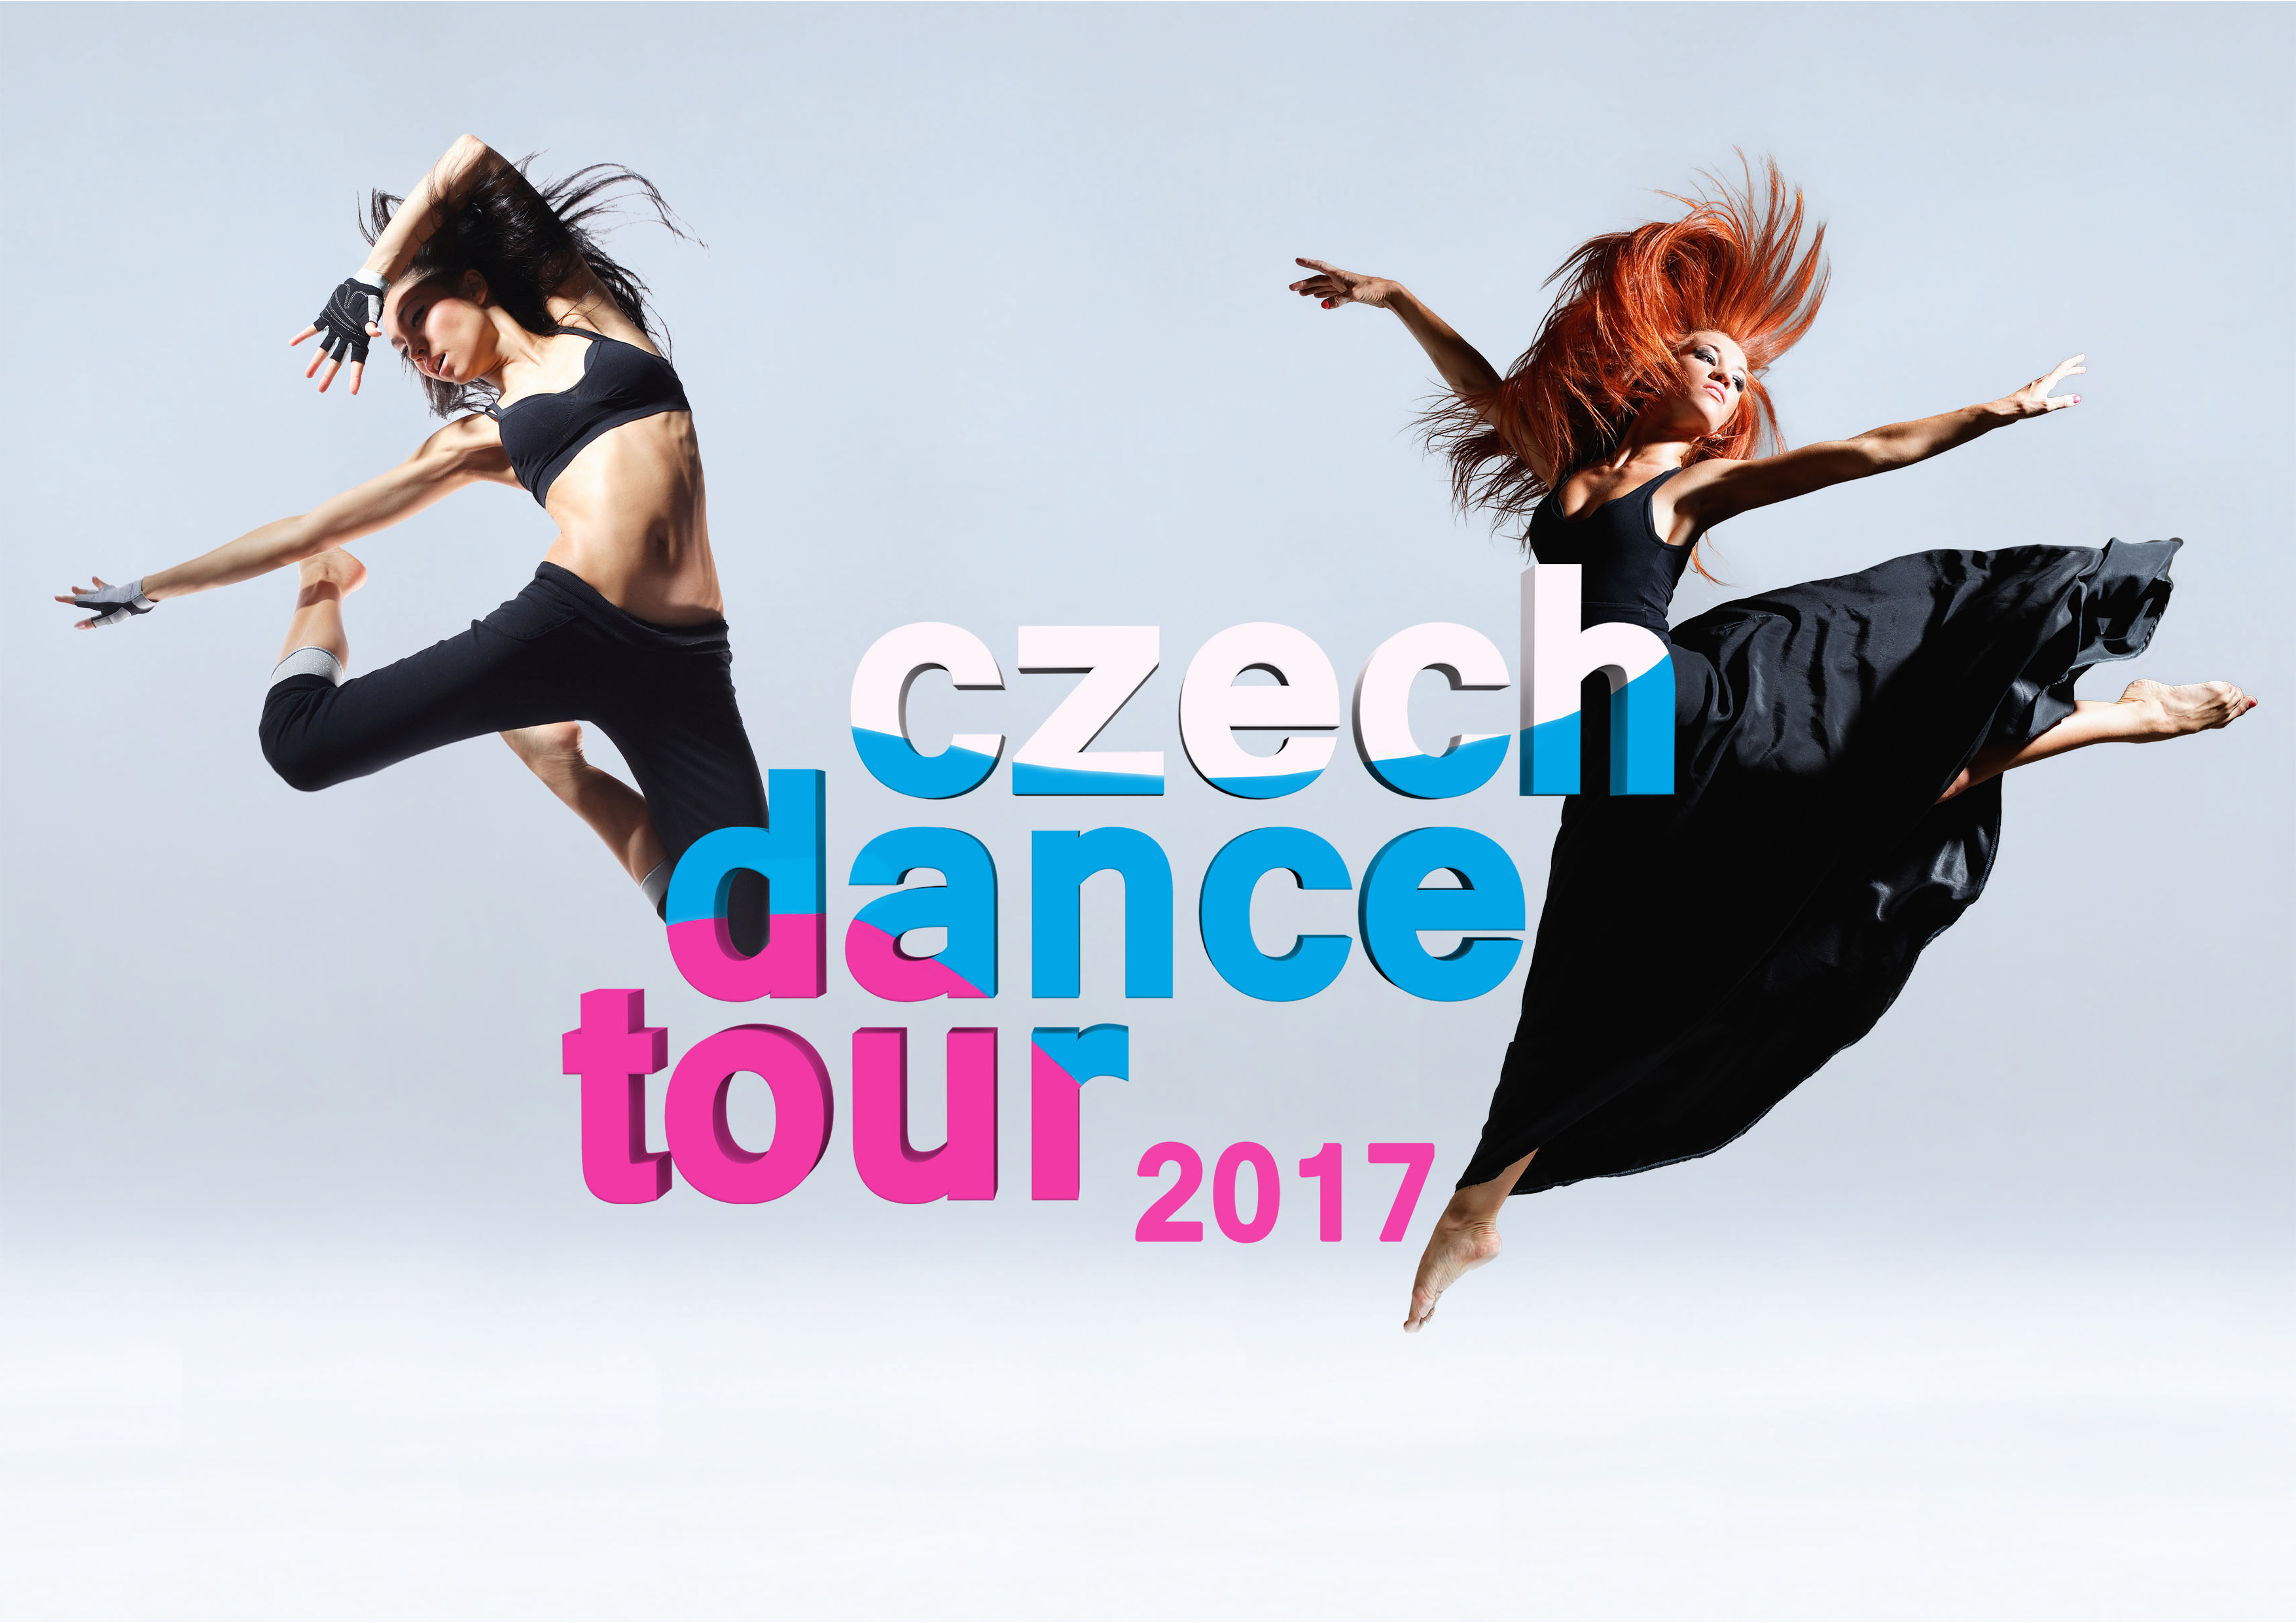 Přemýšlíte, že začnete tančit? Přijďte na Czech Dance Tour a zkuste to!